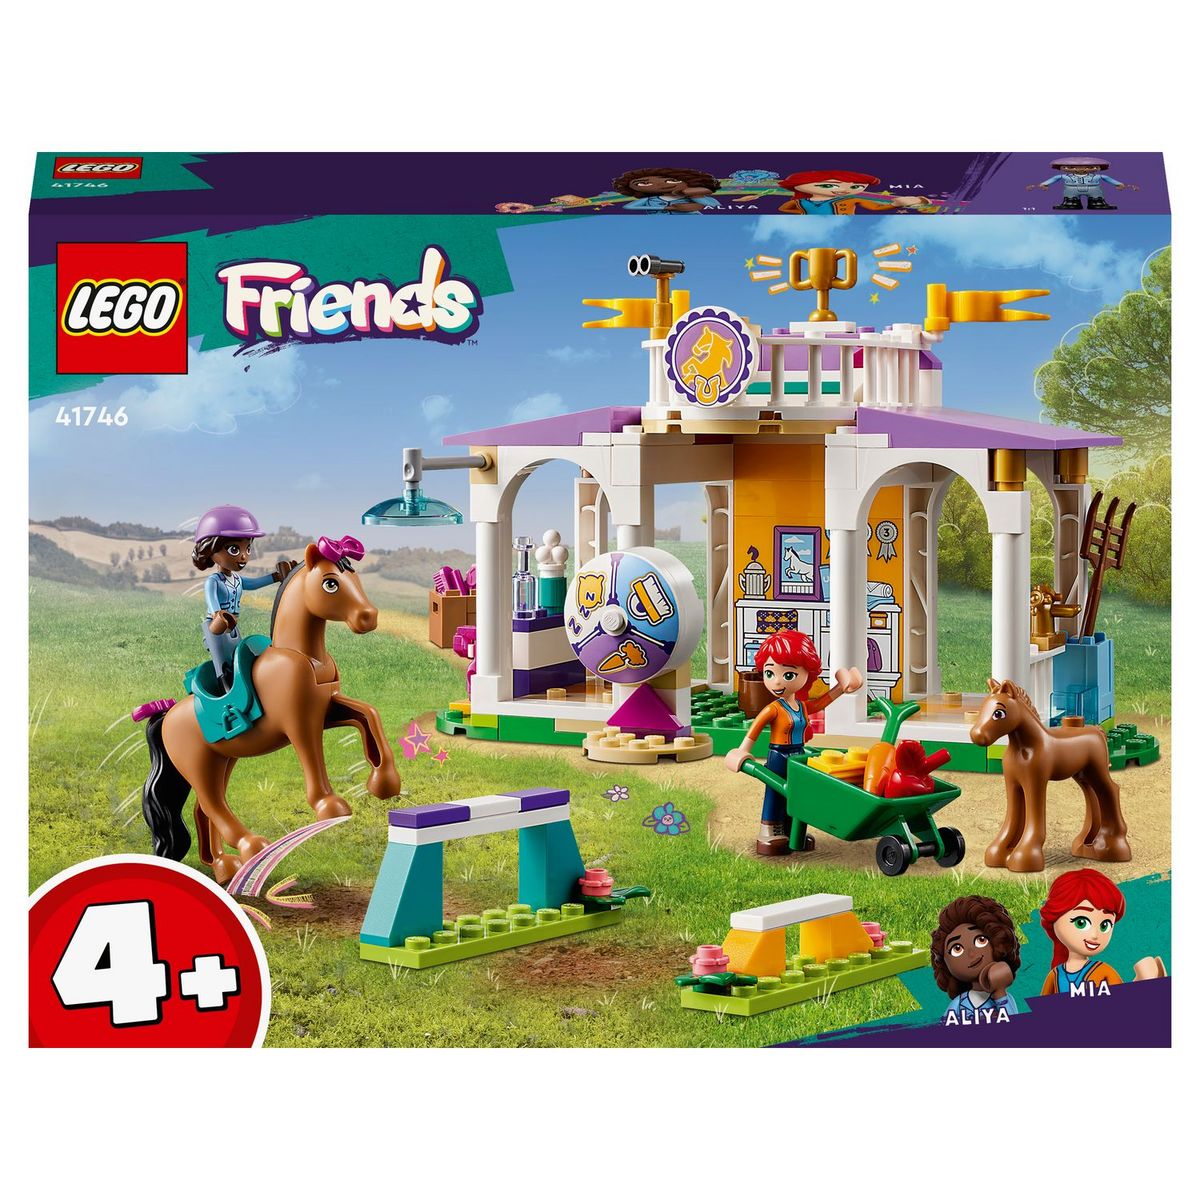 Lou a testé les LEGO Friends pour les filles : Enfants Bienvenus